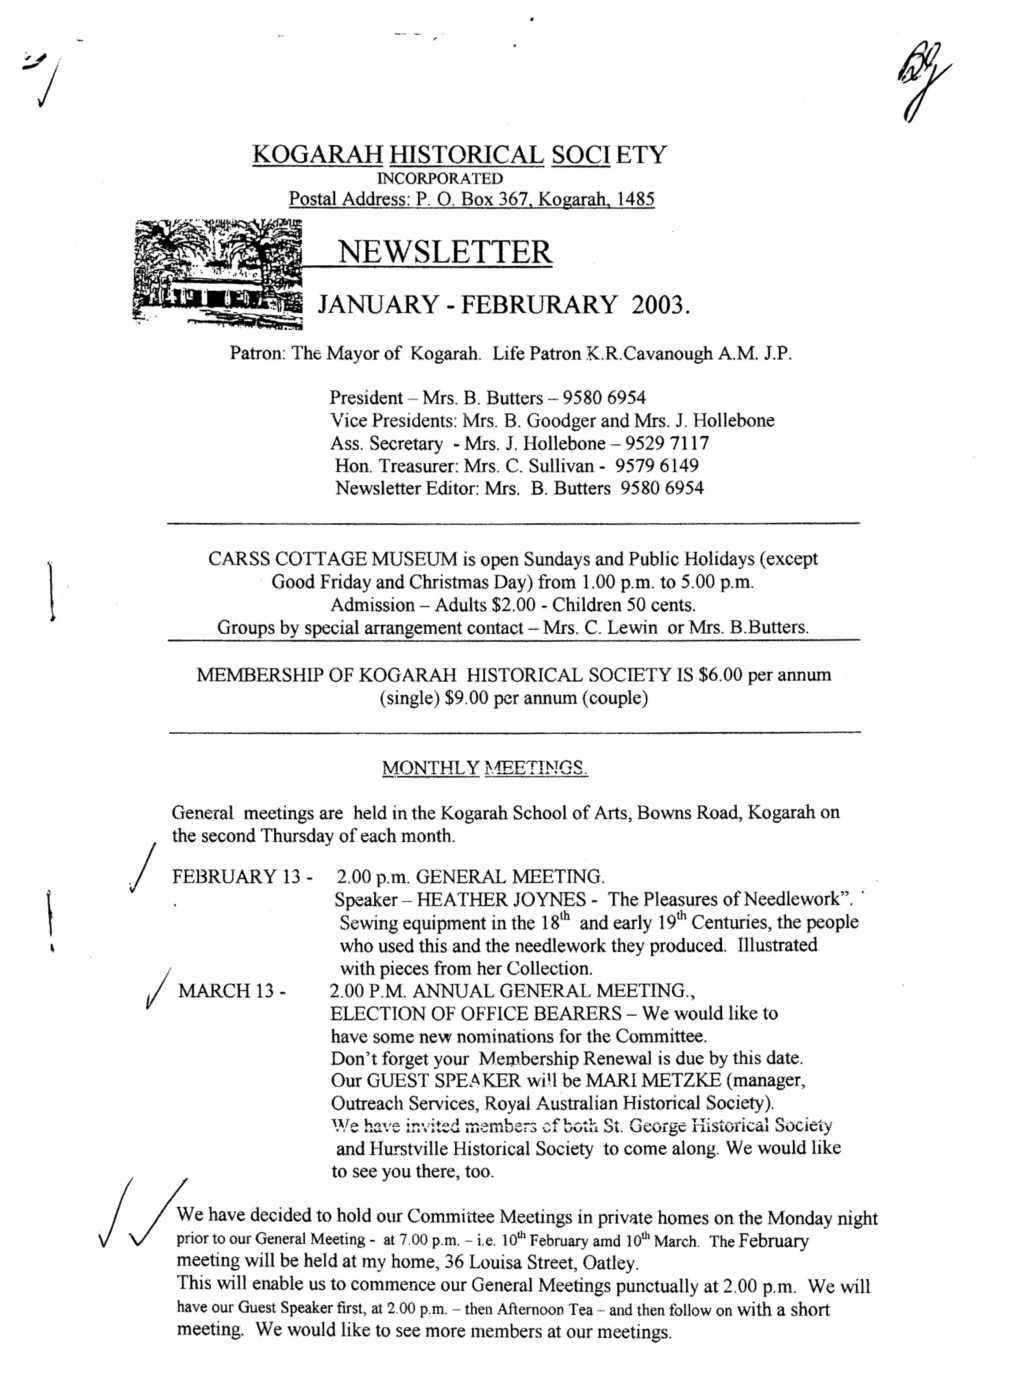 Newsletter January - Februrary 2003